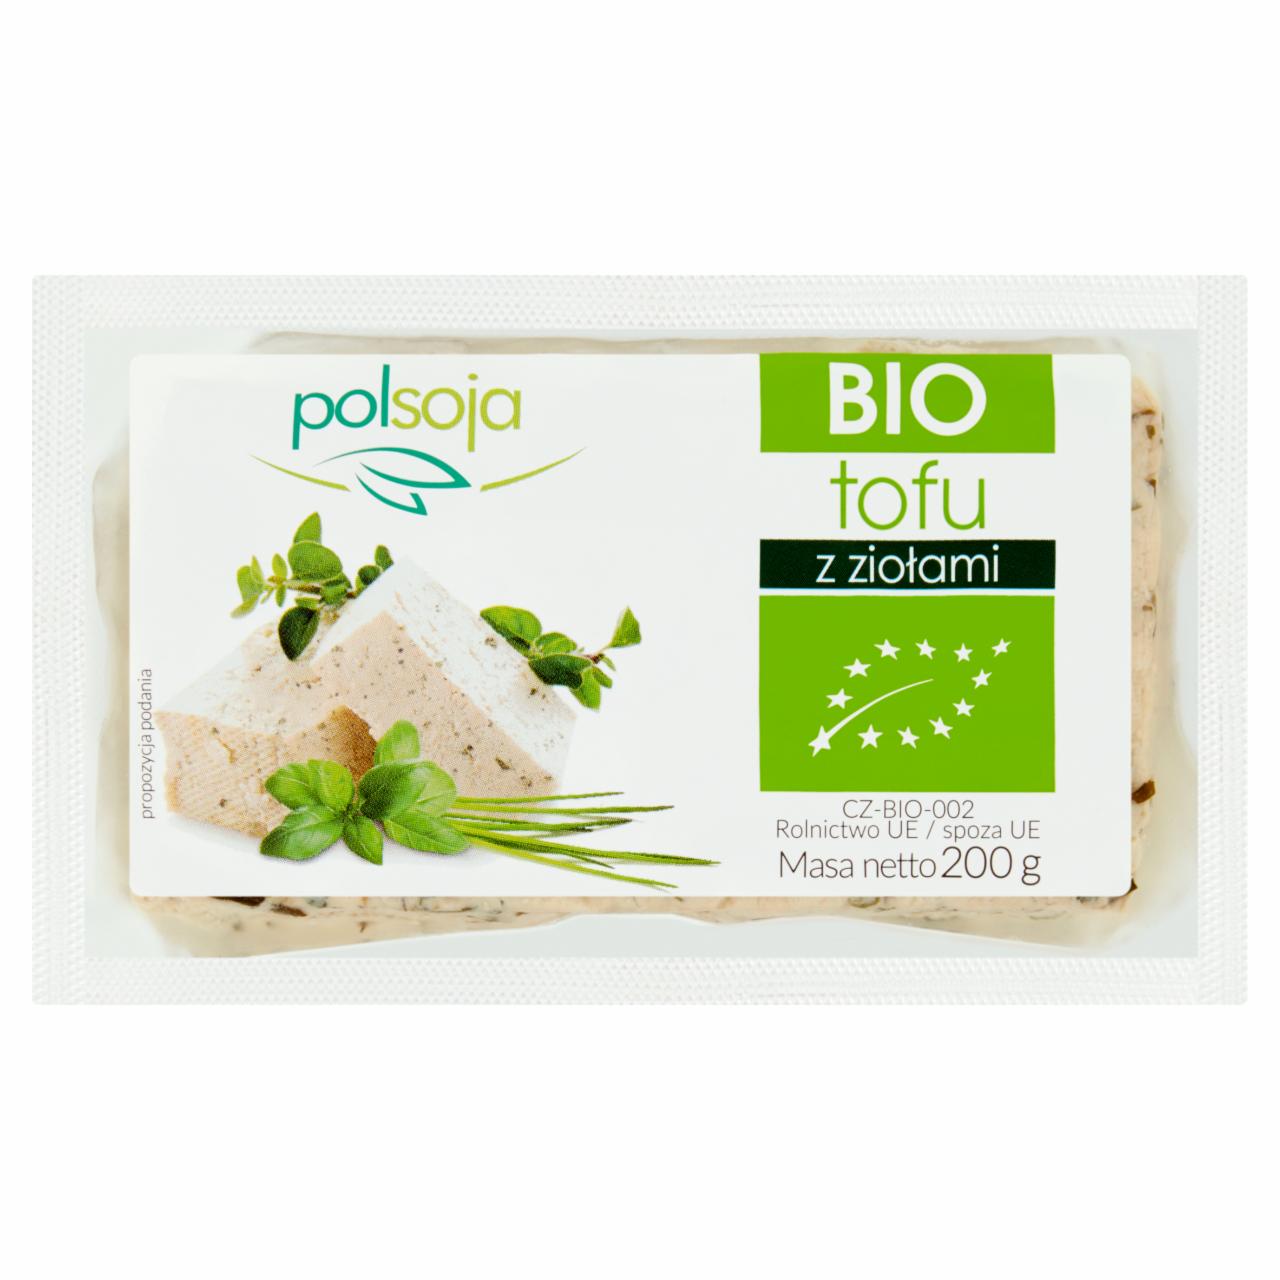 Zdjęcia - Polsoja BIO Tofu z ziołami 200 g